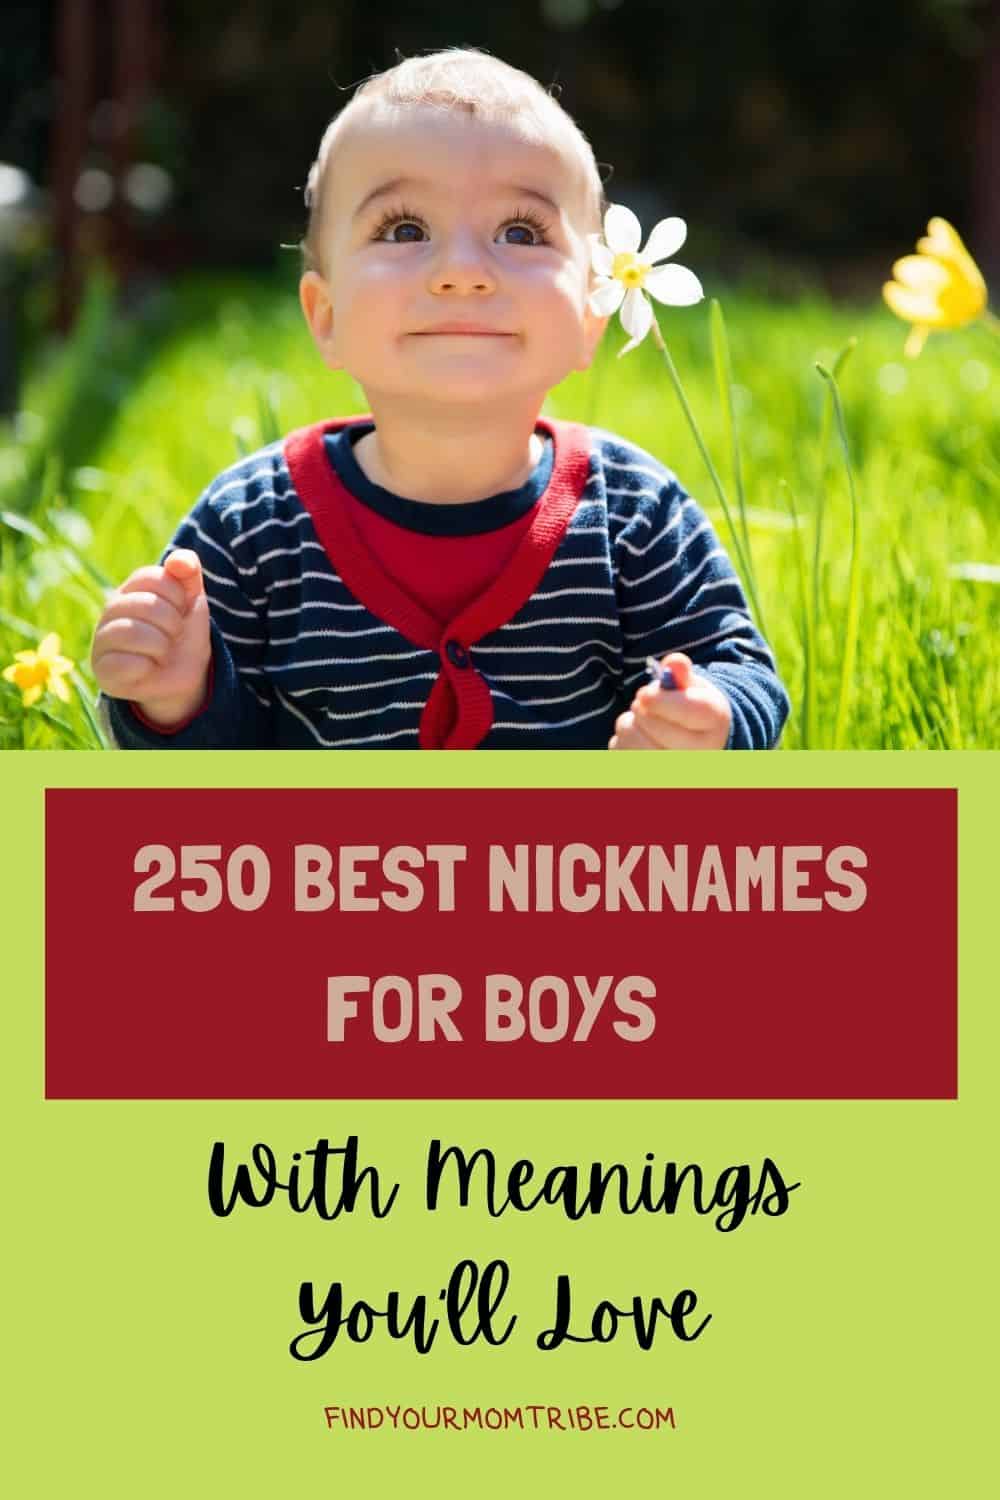  Pinterest nicknames for boys